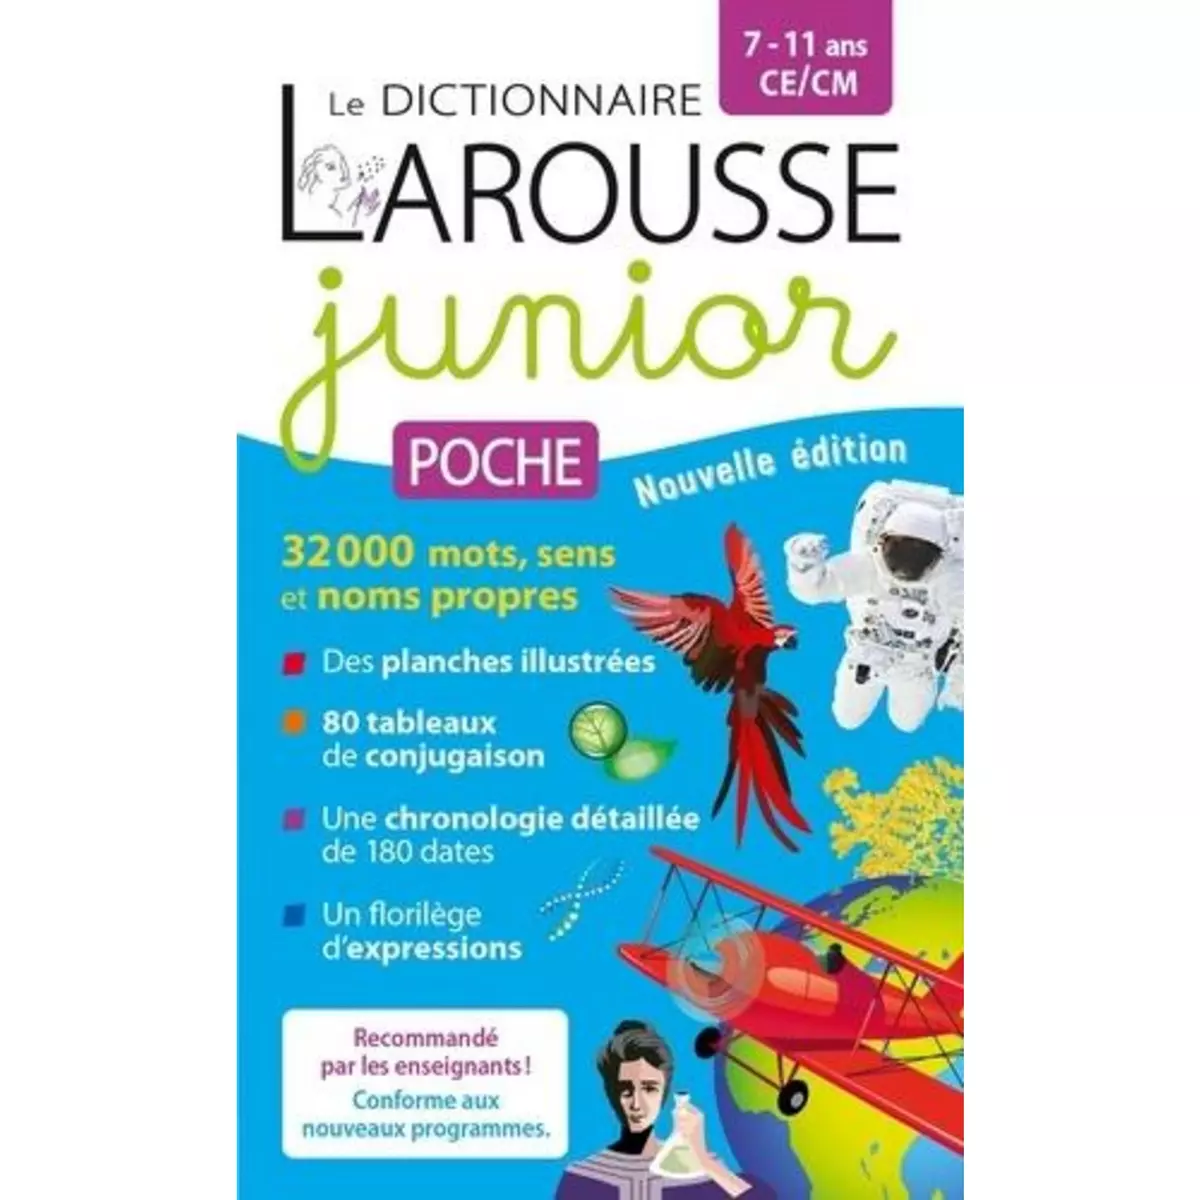  LE DICTIONNAIRE LAROUSSE JUNIOR POCHE CE/CM, Larousse